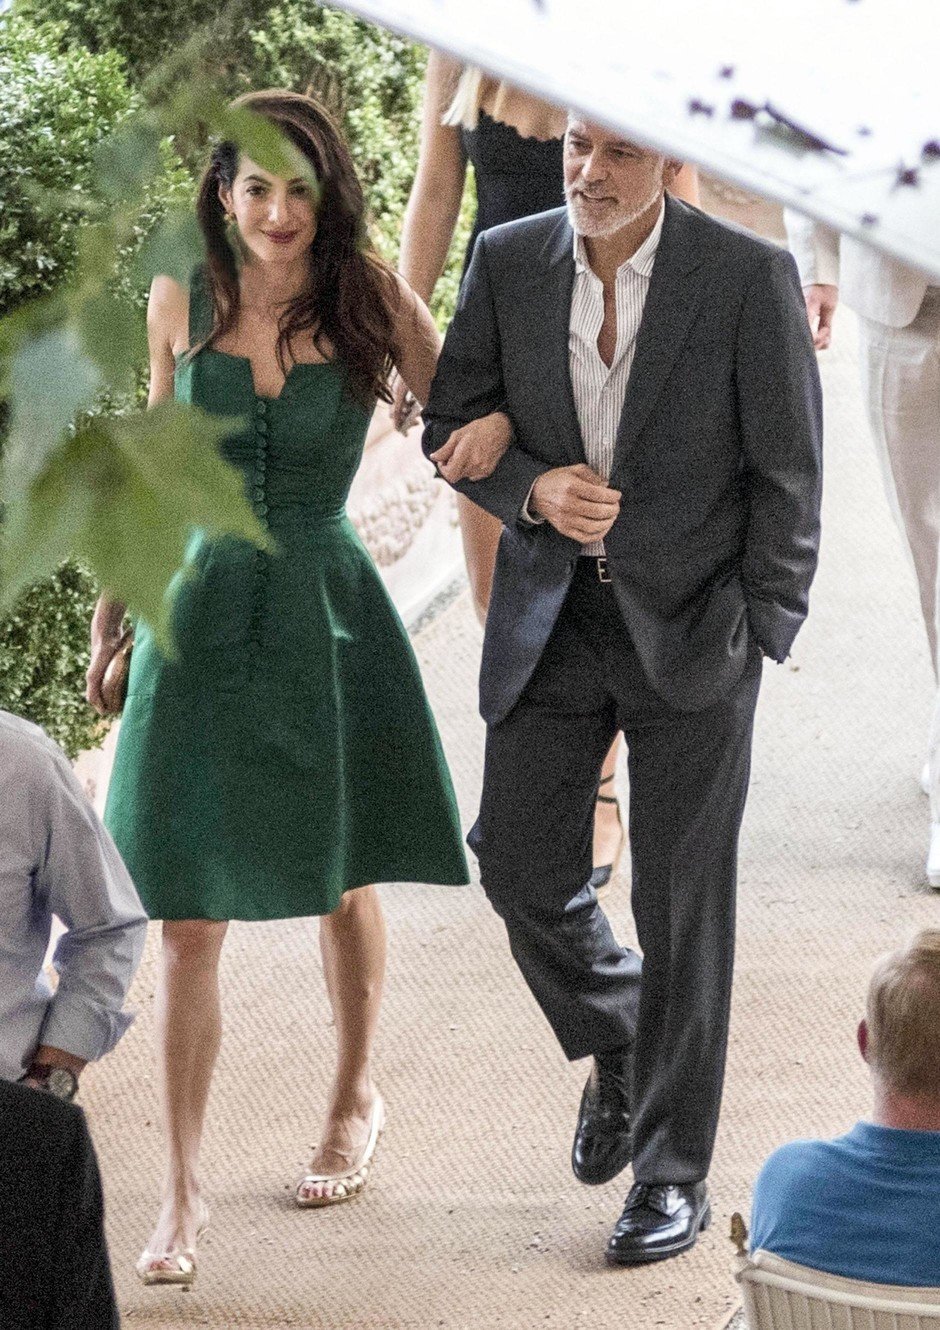 Джорджа и Амаль Клуни застукали на свидании, и они настоящие влюбленные котики - фото 443035